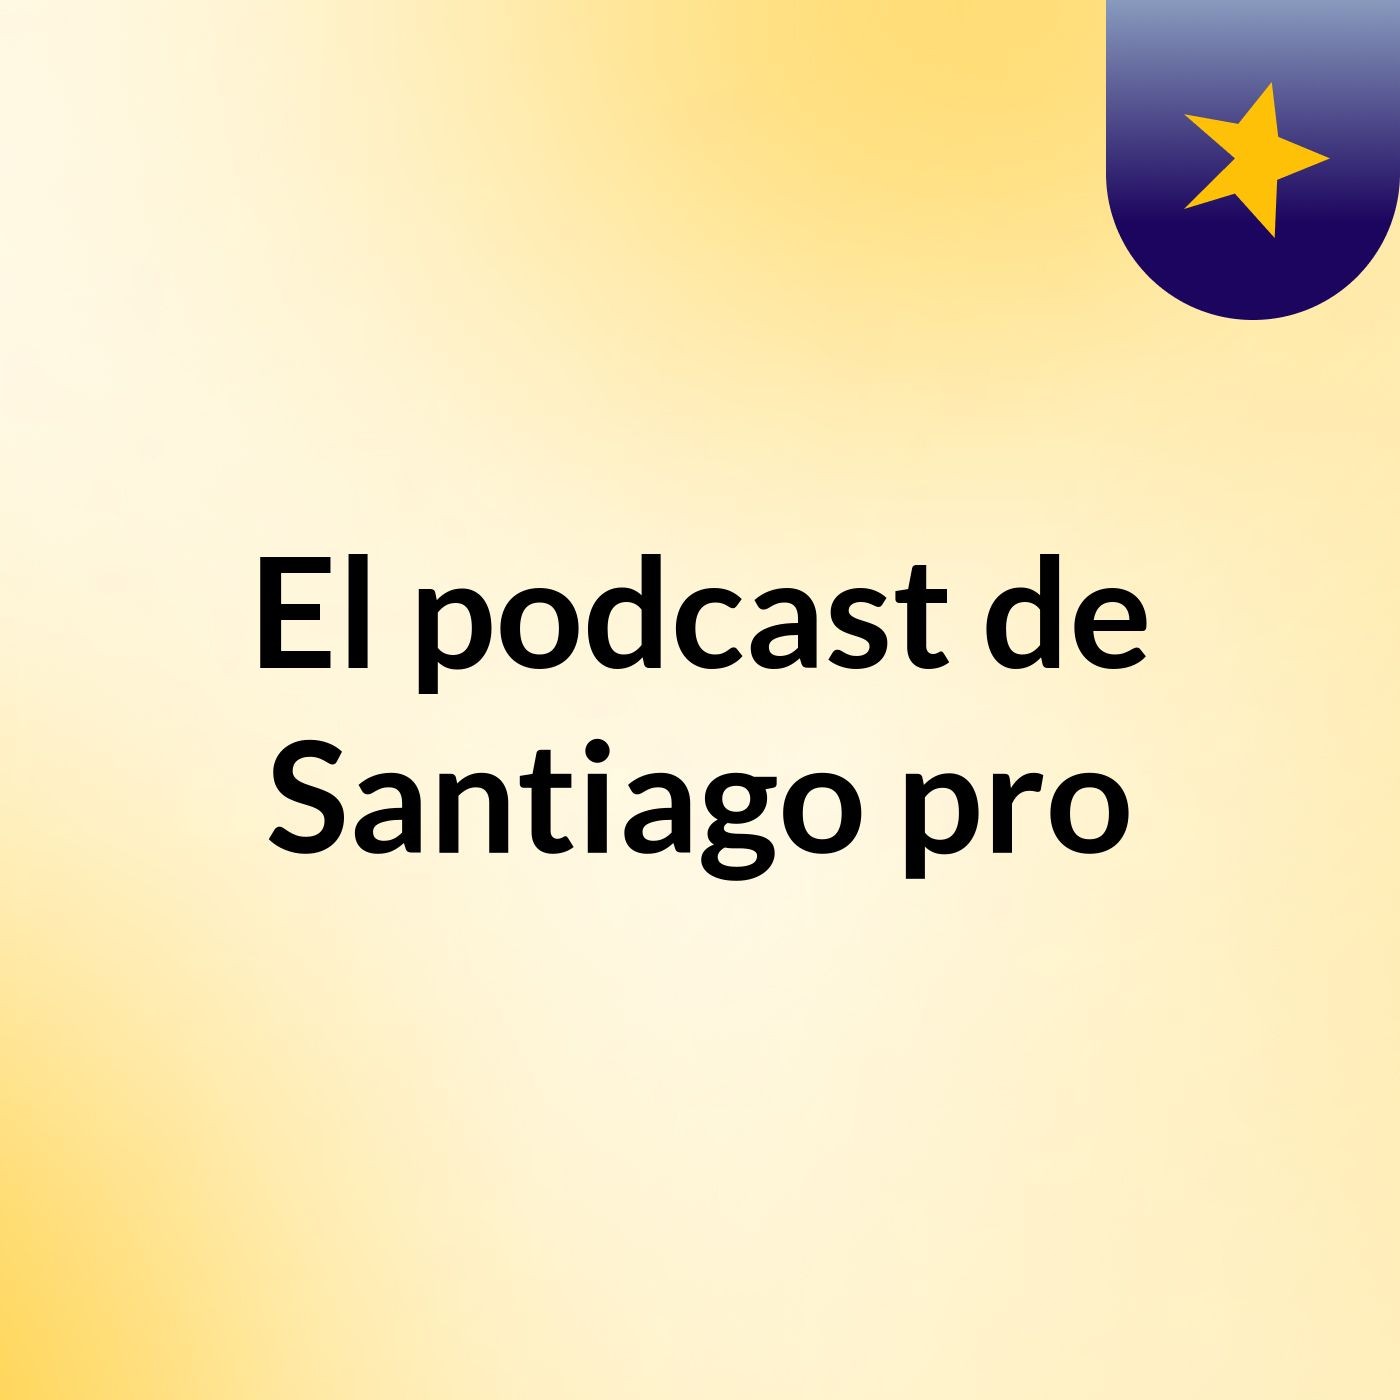 El podcast de Santiago pro